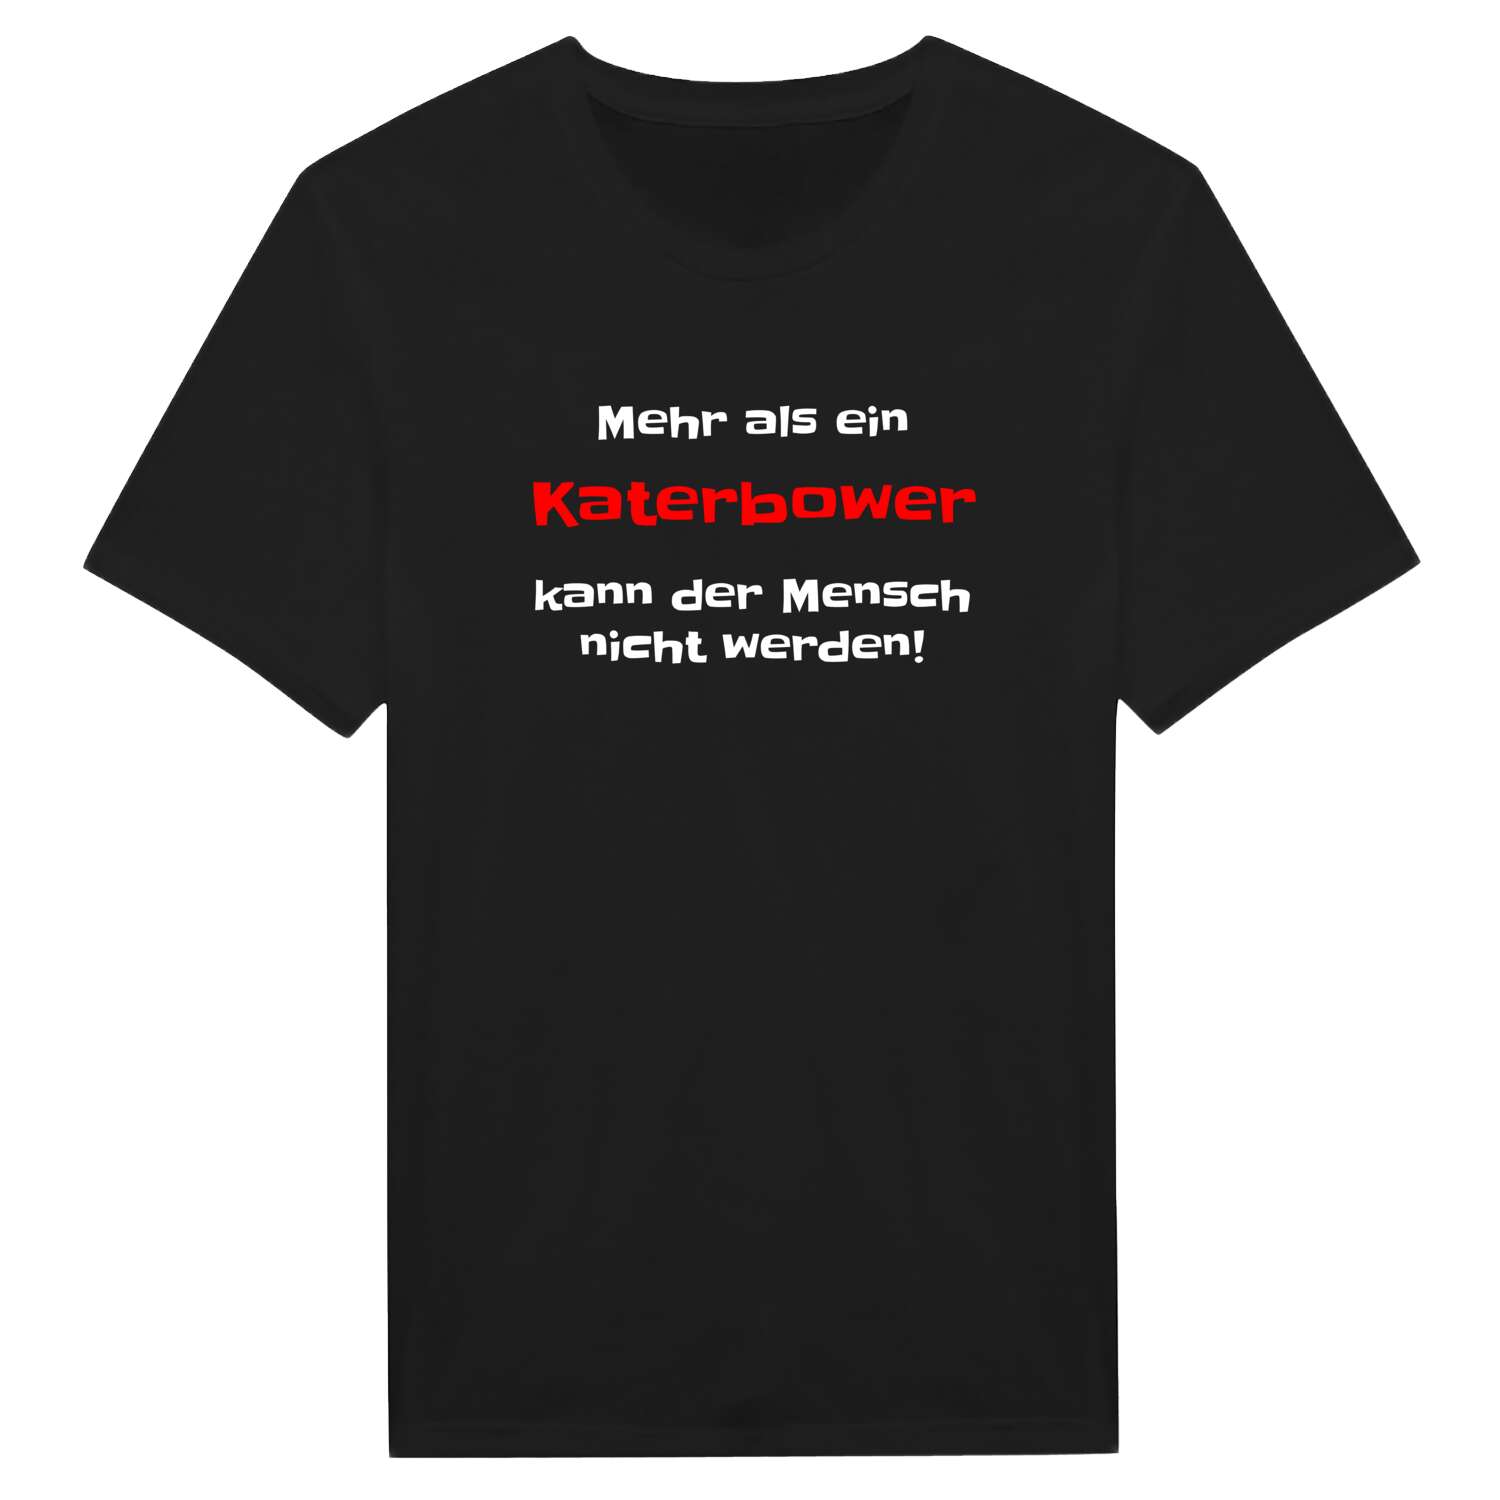 Katerbow T-Shirt »Mehr als ein«